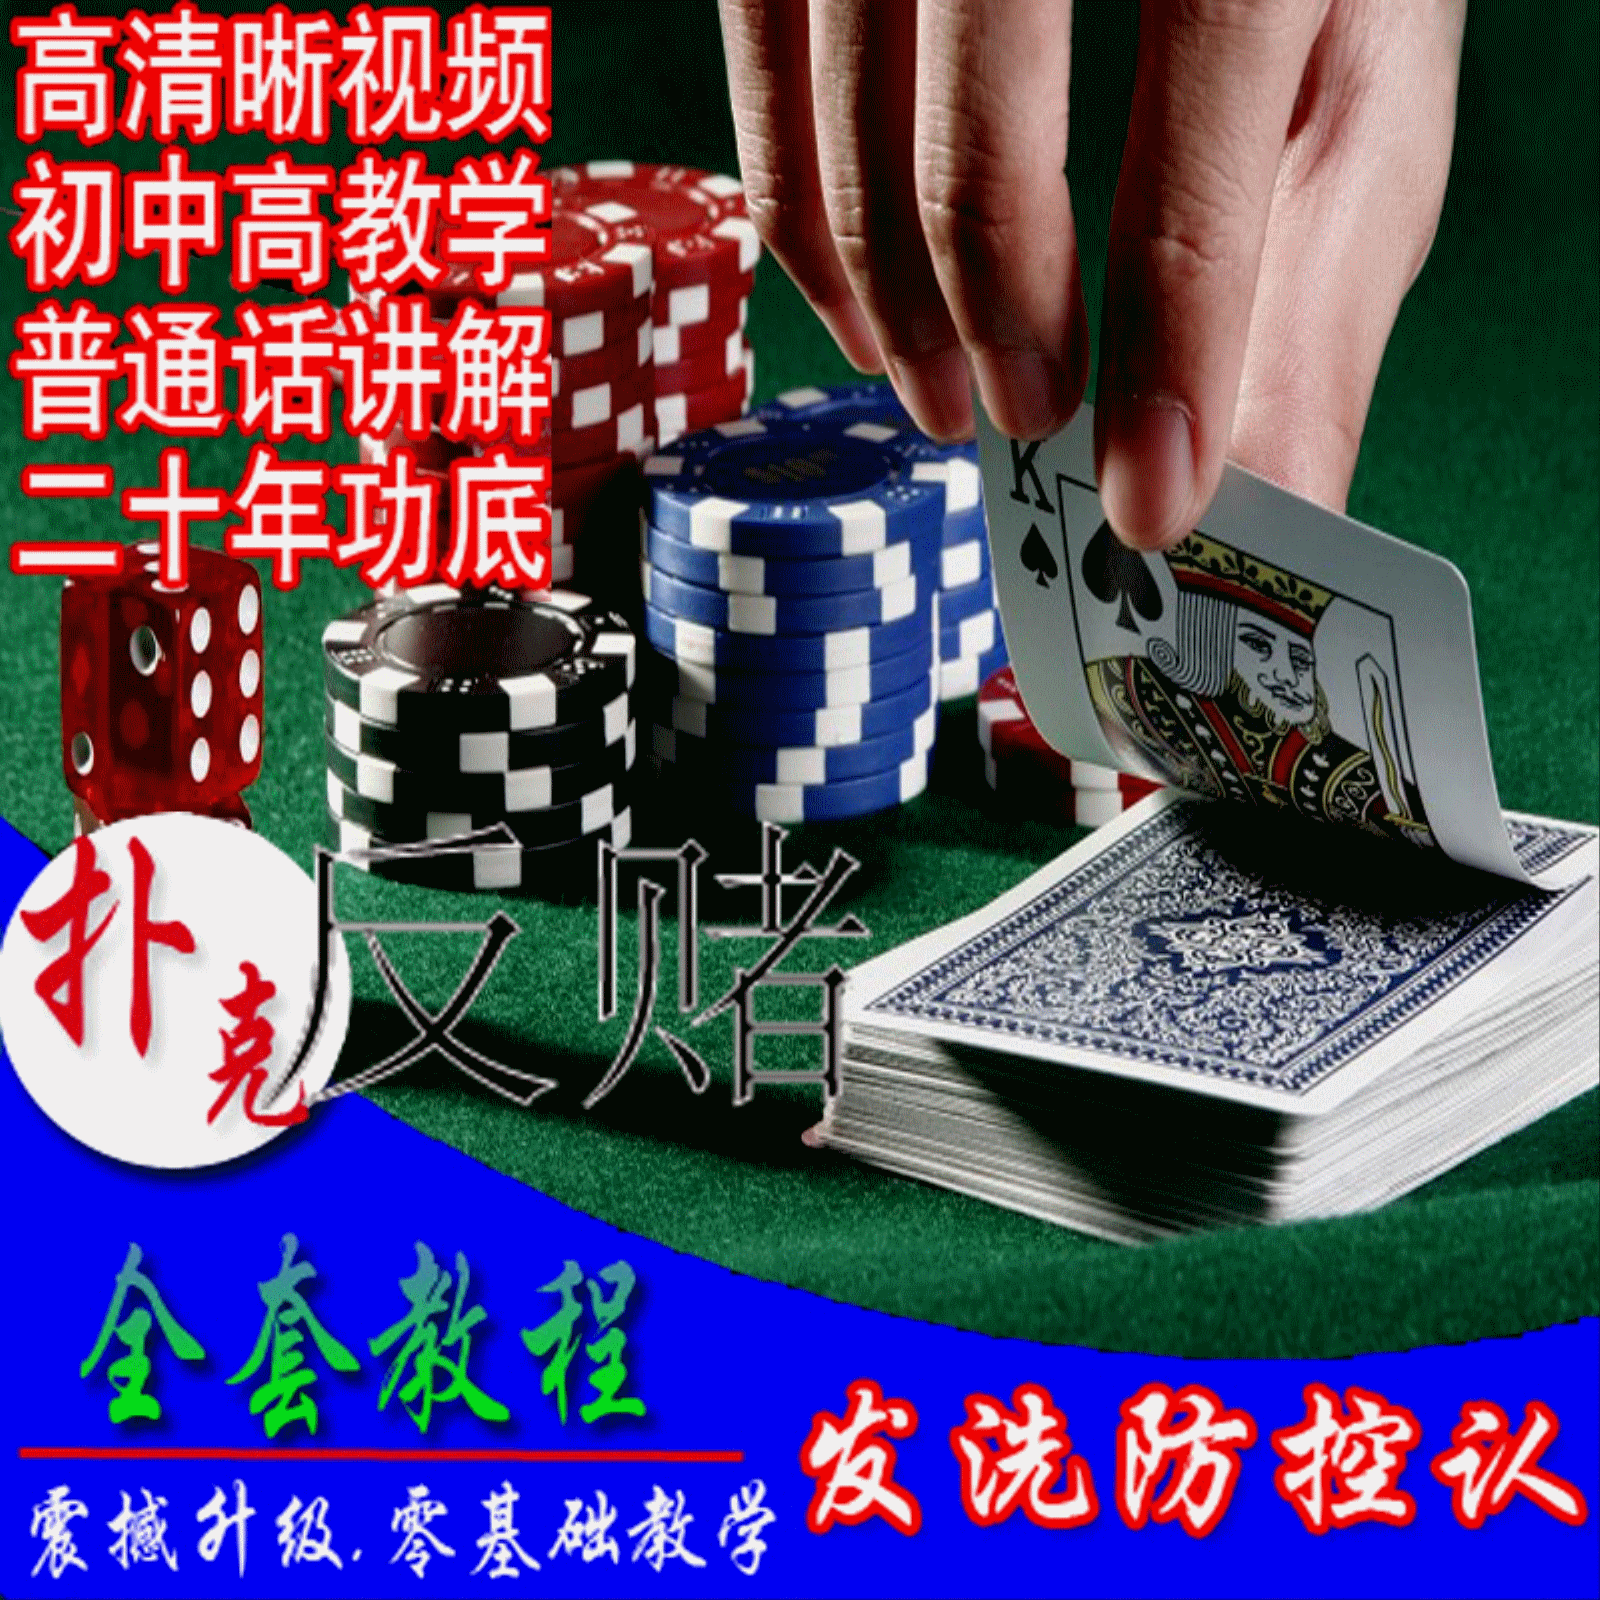 扑克牌魔术教学全套技巧纯手法技术视频千洗发牌防控认术教程大全